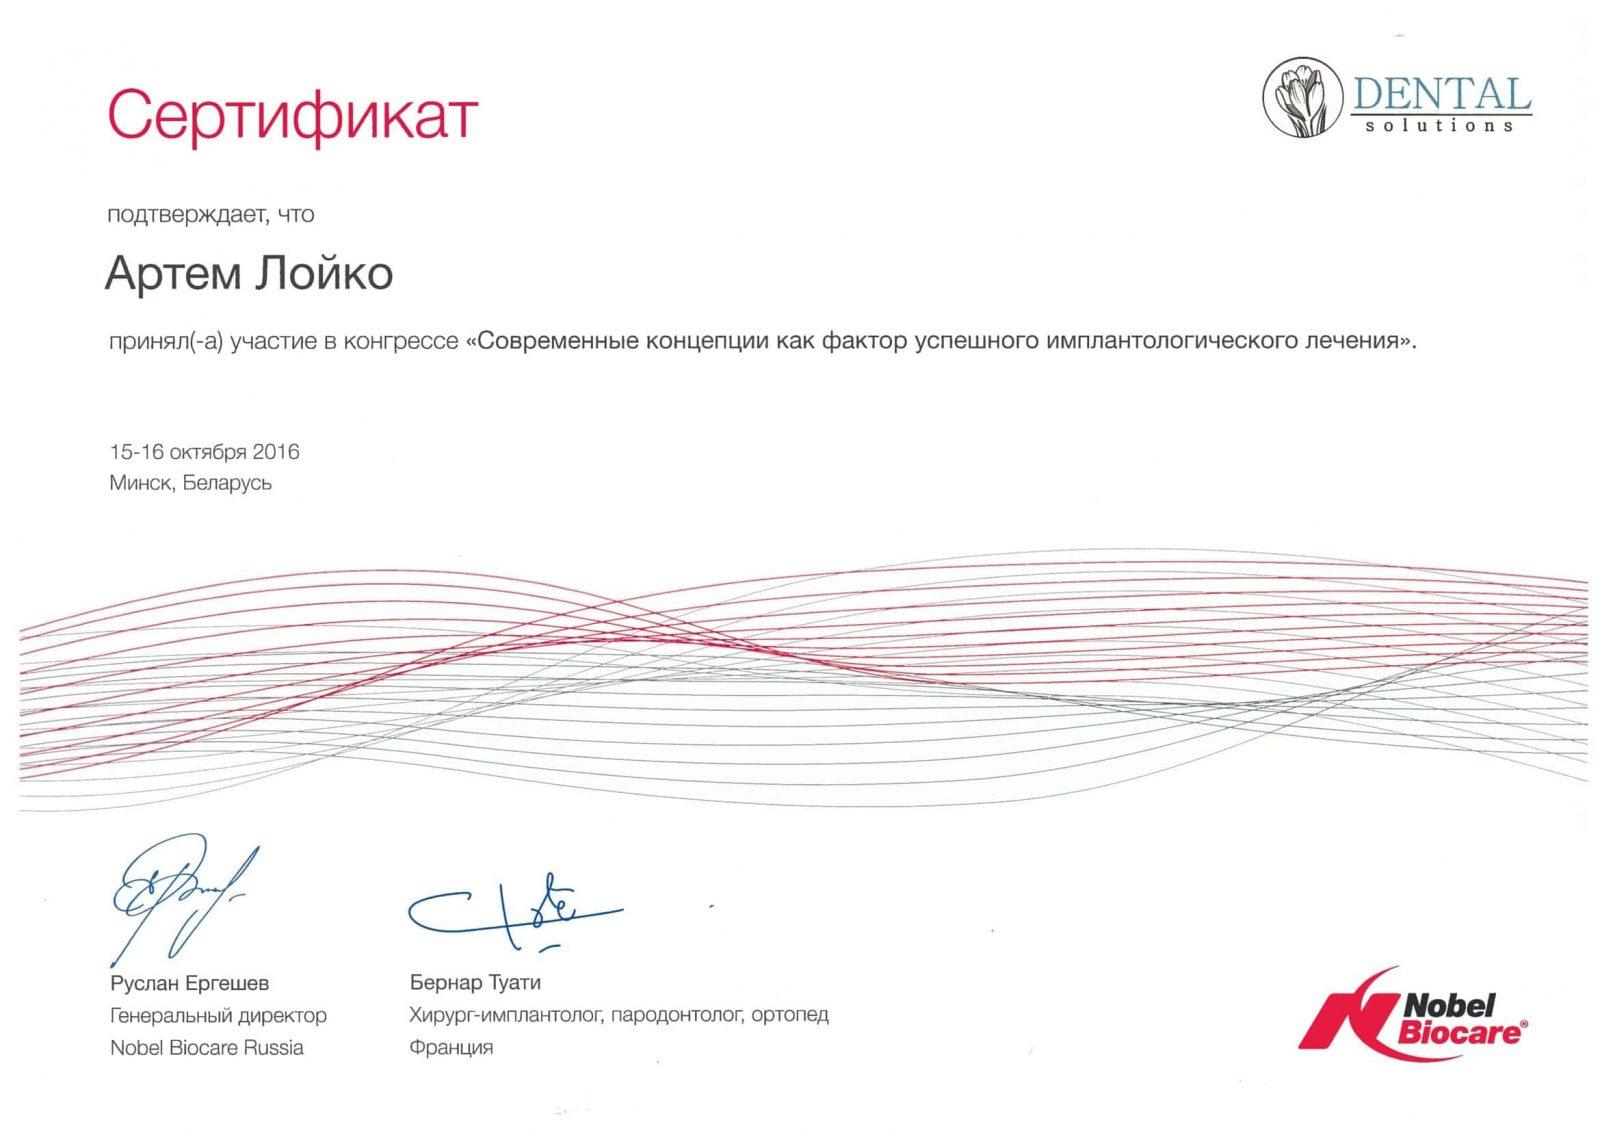 Сертификат Nobel Biocare выдан Лойко Артёму об успешном прохождении курса. Современные концепции как фактор успешного имплантологического лечения.